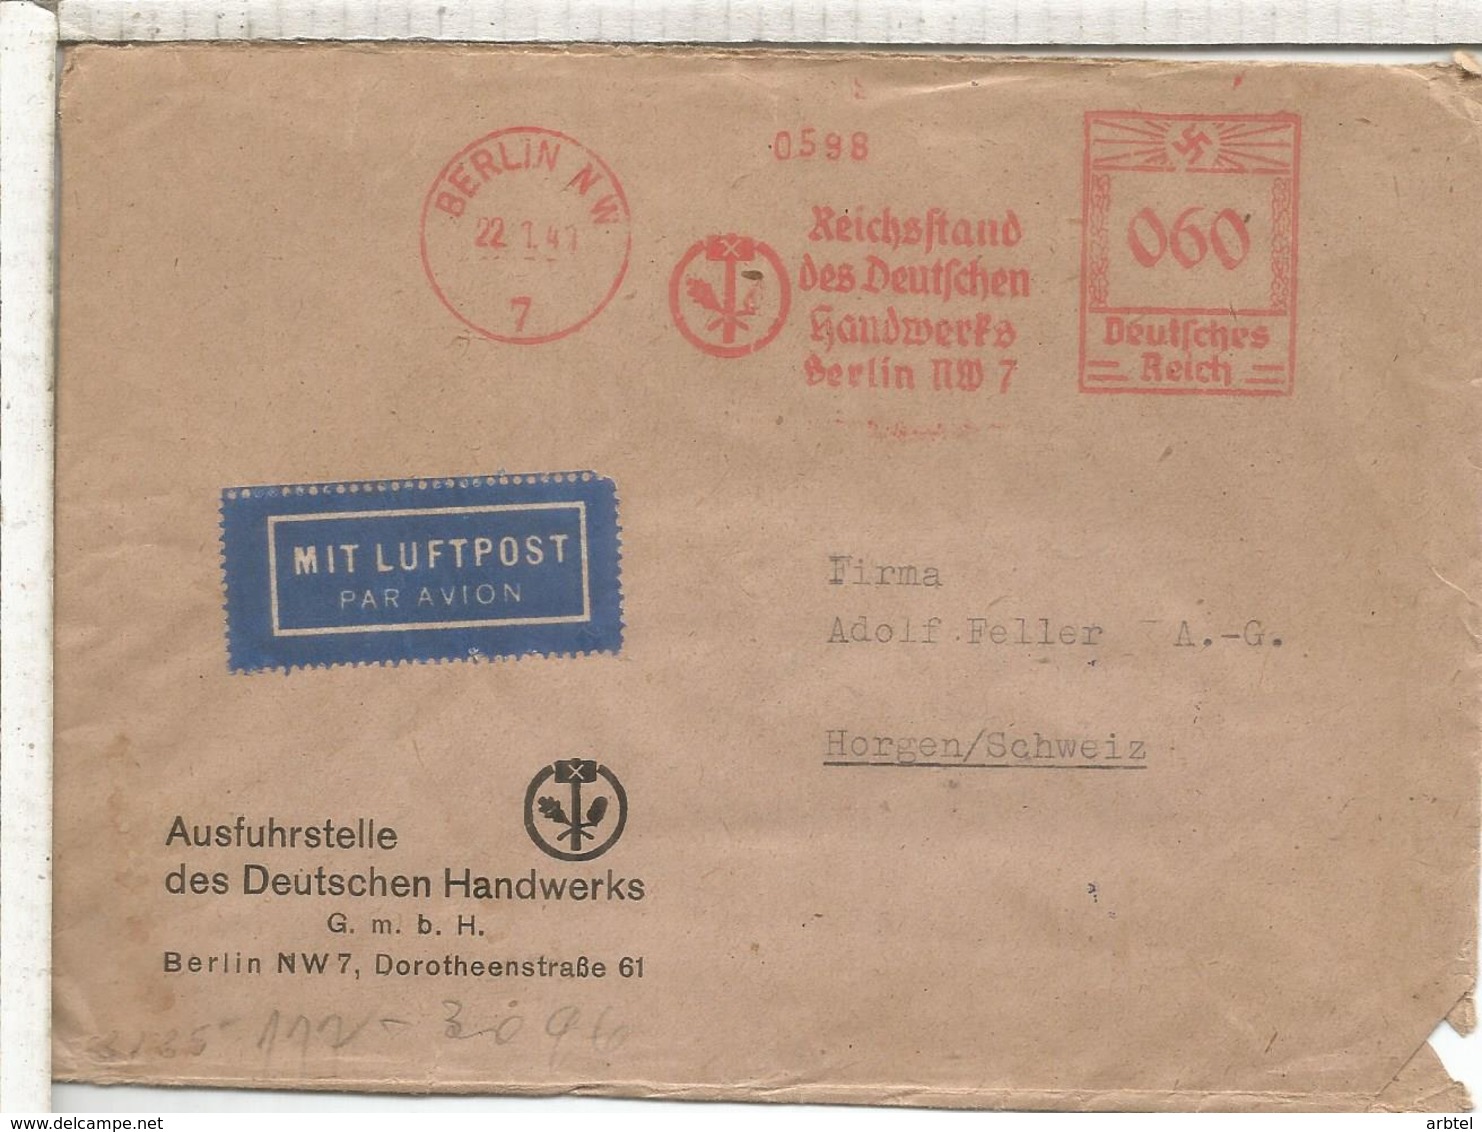 ALEMANIA RECIH 1941 BERLIN METER HANDWERKS ARTESANIA CON CENSURA CENSORED - Cartas & Documentos